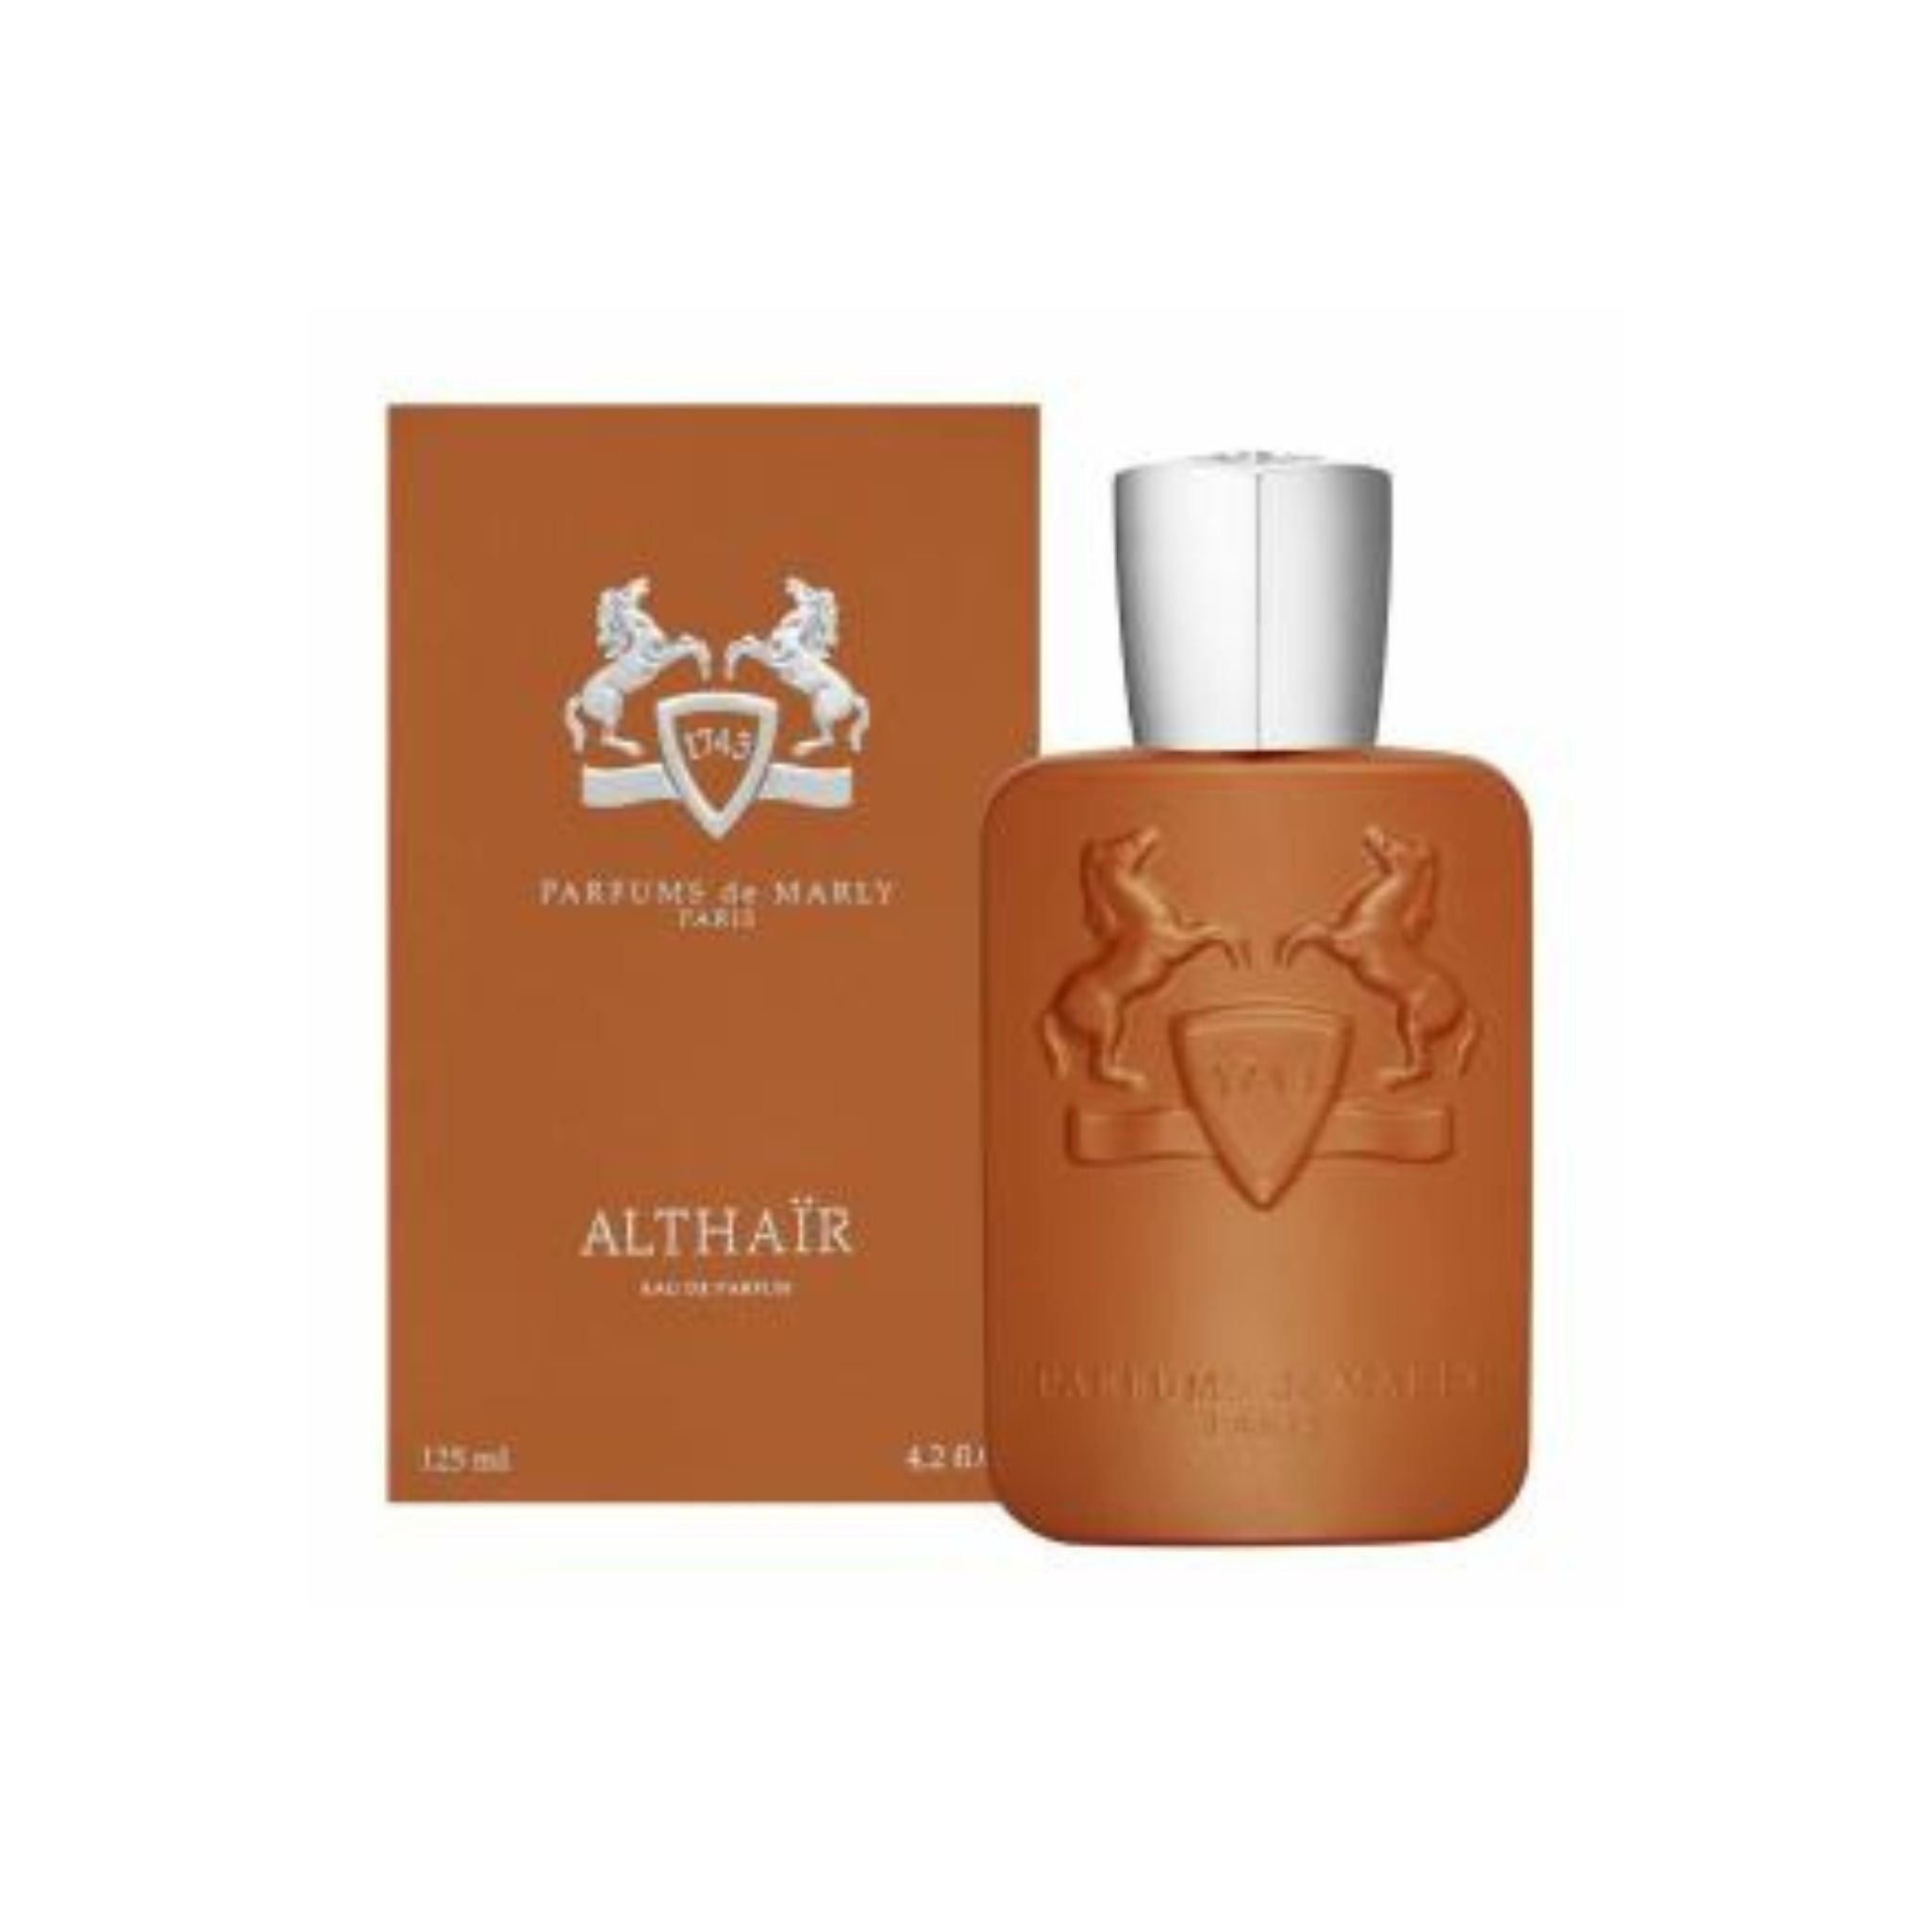 althair parfums de marly perfume 